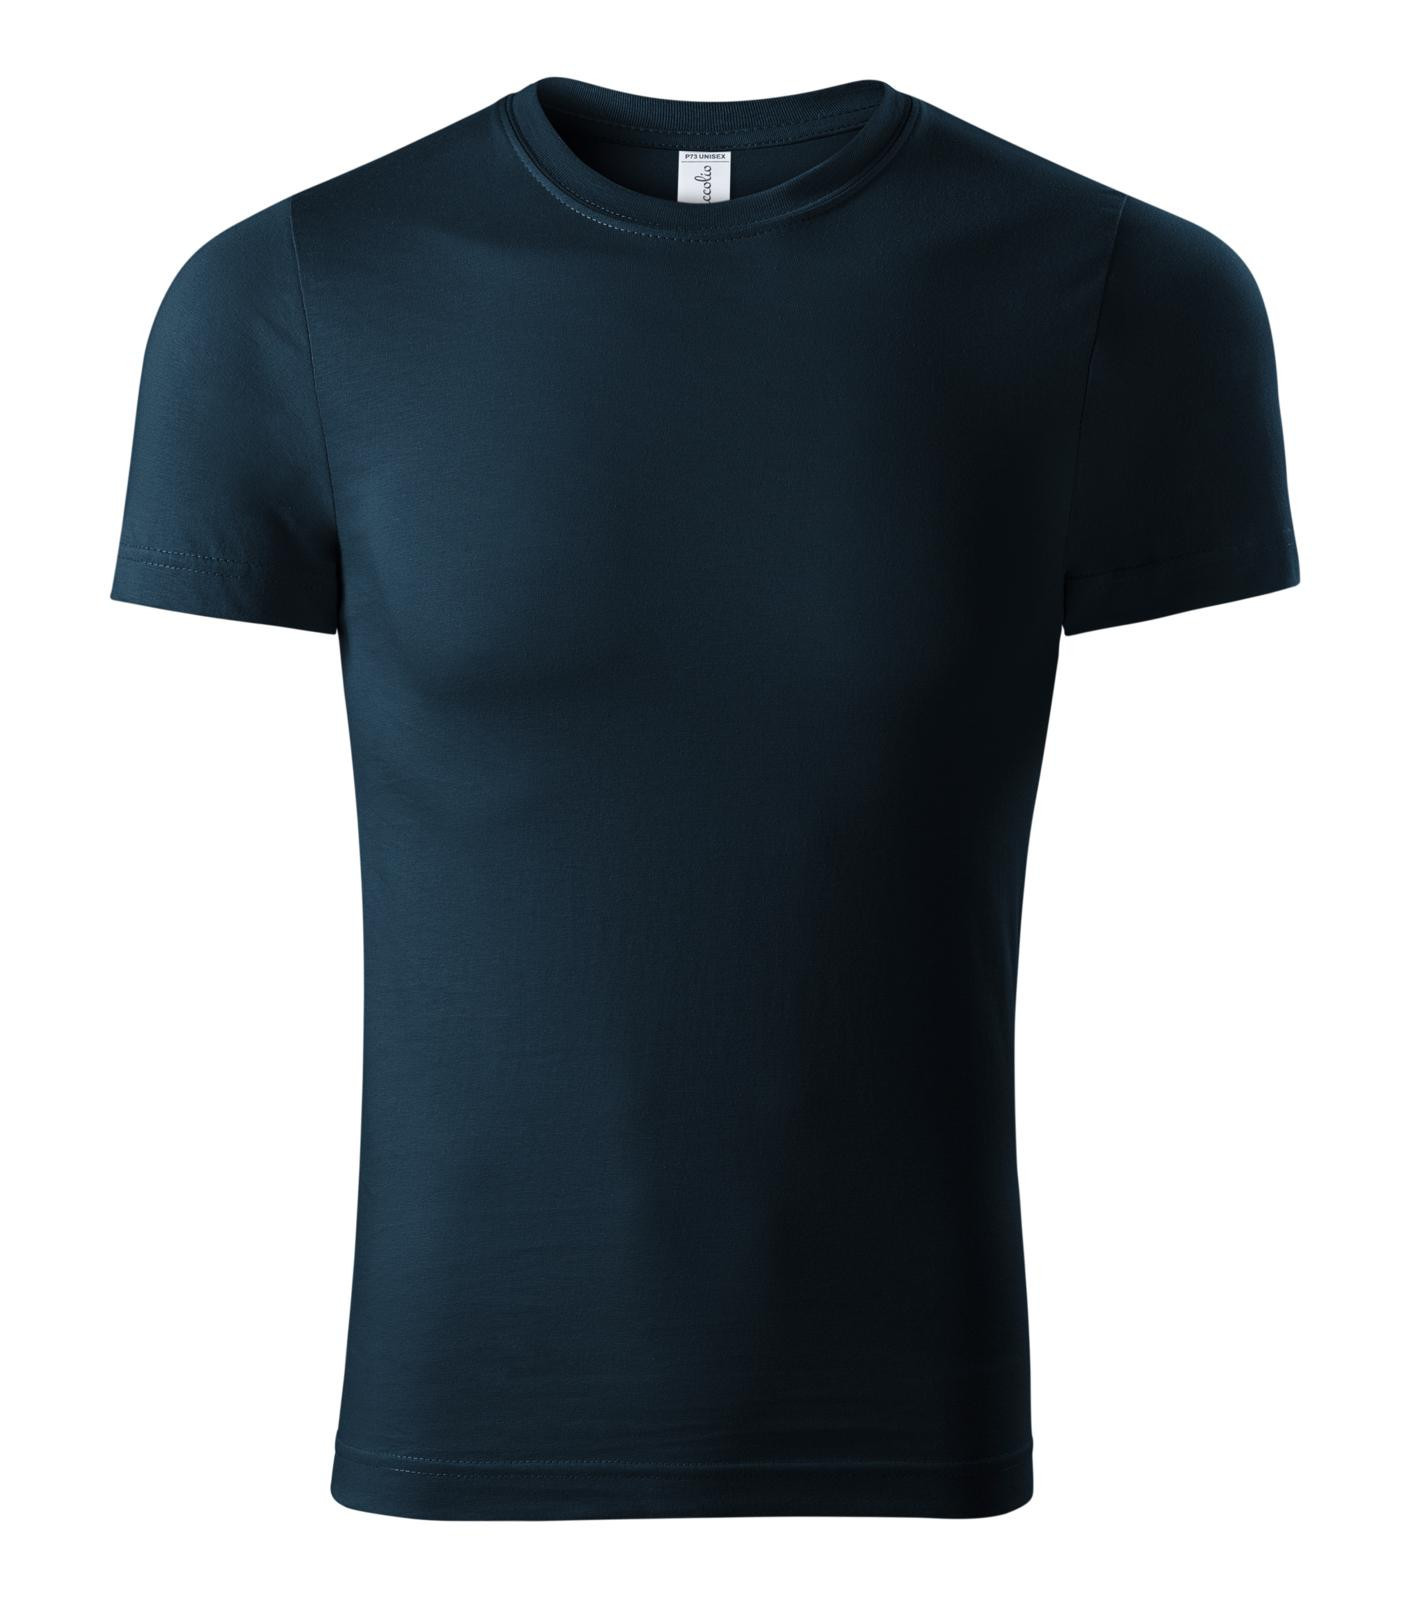 Unisex tričko Piccolio Paint P73 - veľkosť: L, farba: tmavo modrá